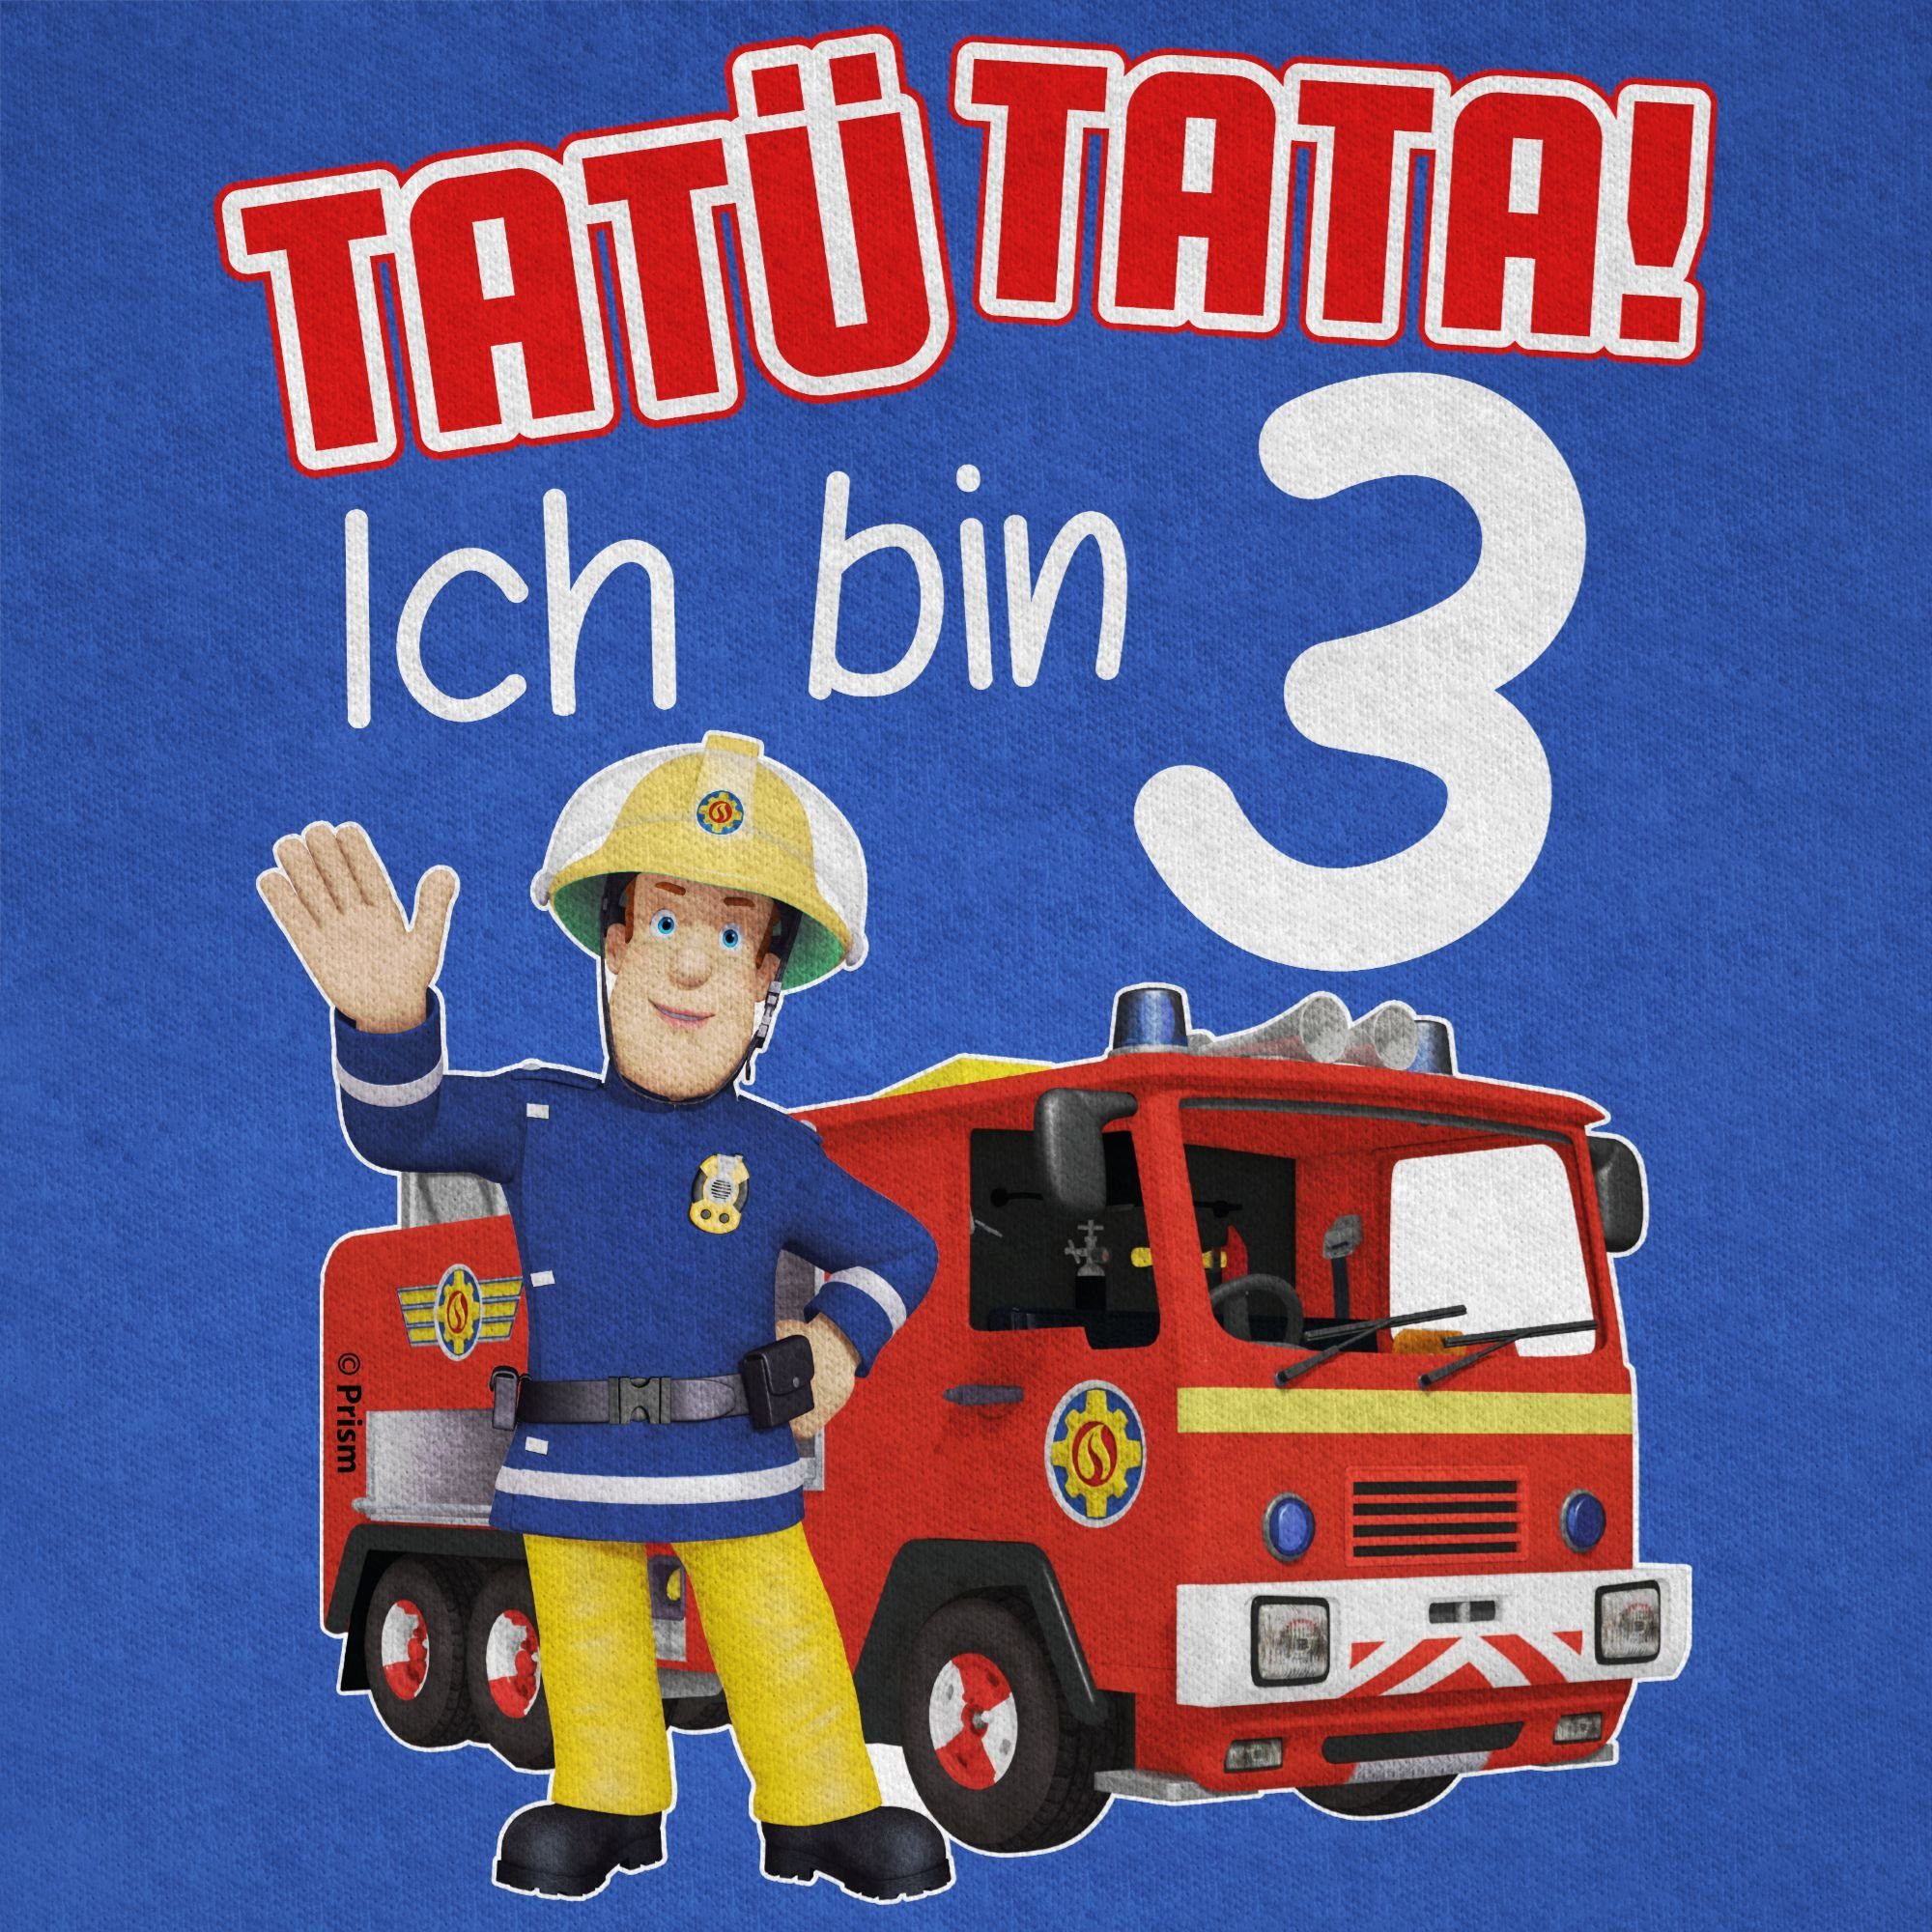 Shirtracer T-Shirt Tatü Sam 3 bin Geburtstag Ich Royalblau Tata! Jungen Feuerwehrmann 01